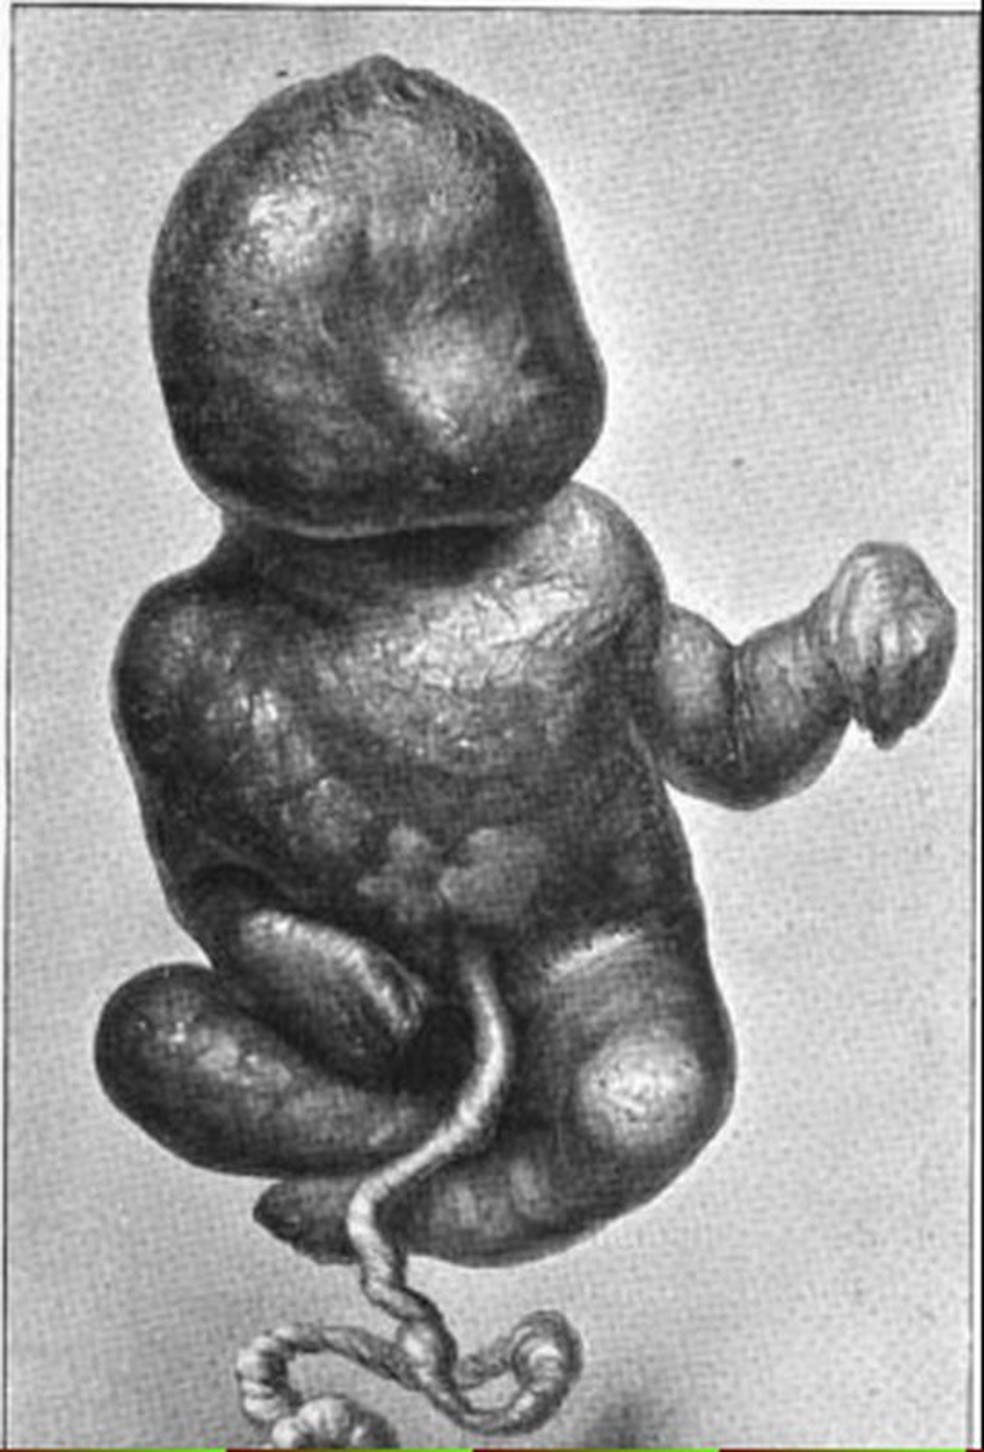 Exemplo de litopedia, caso raro em que feto se mumifica dentro da barriga da mulher — Foto: Wikimedia Commons